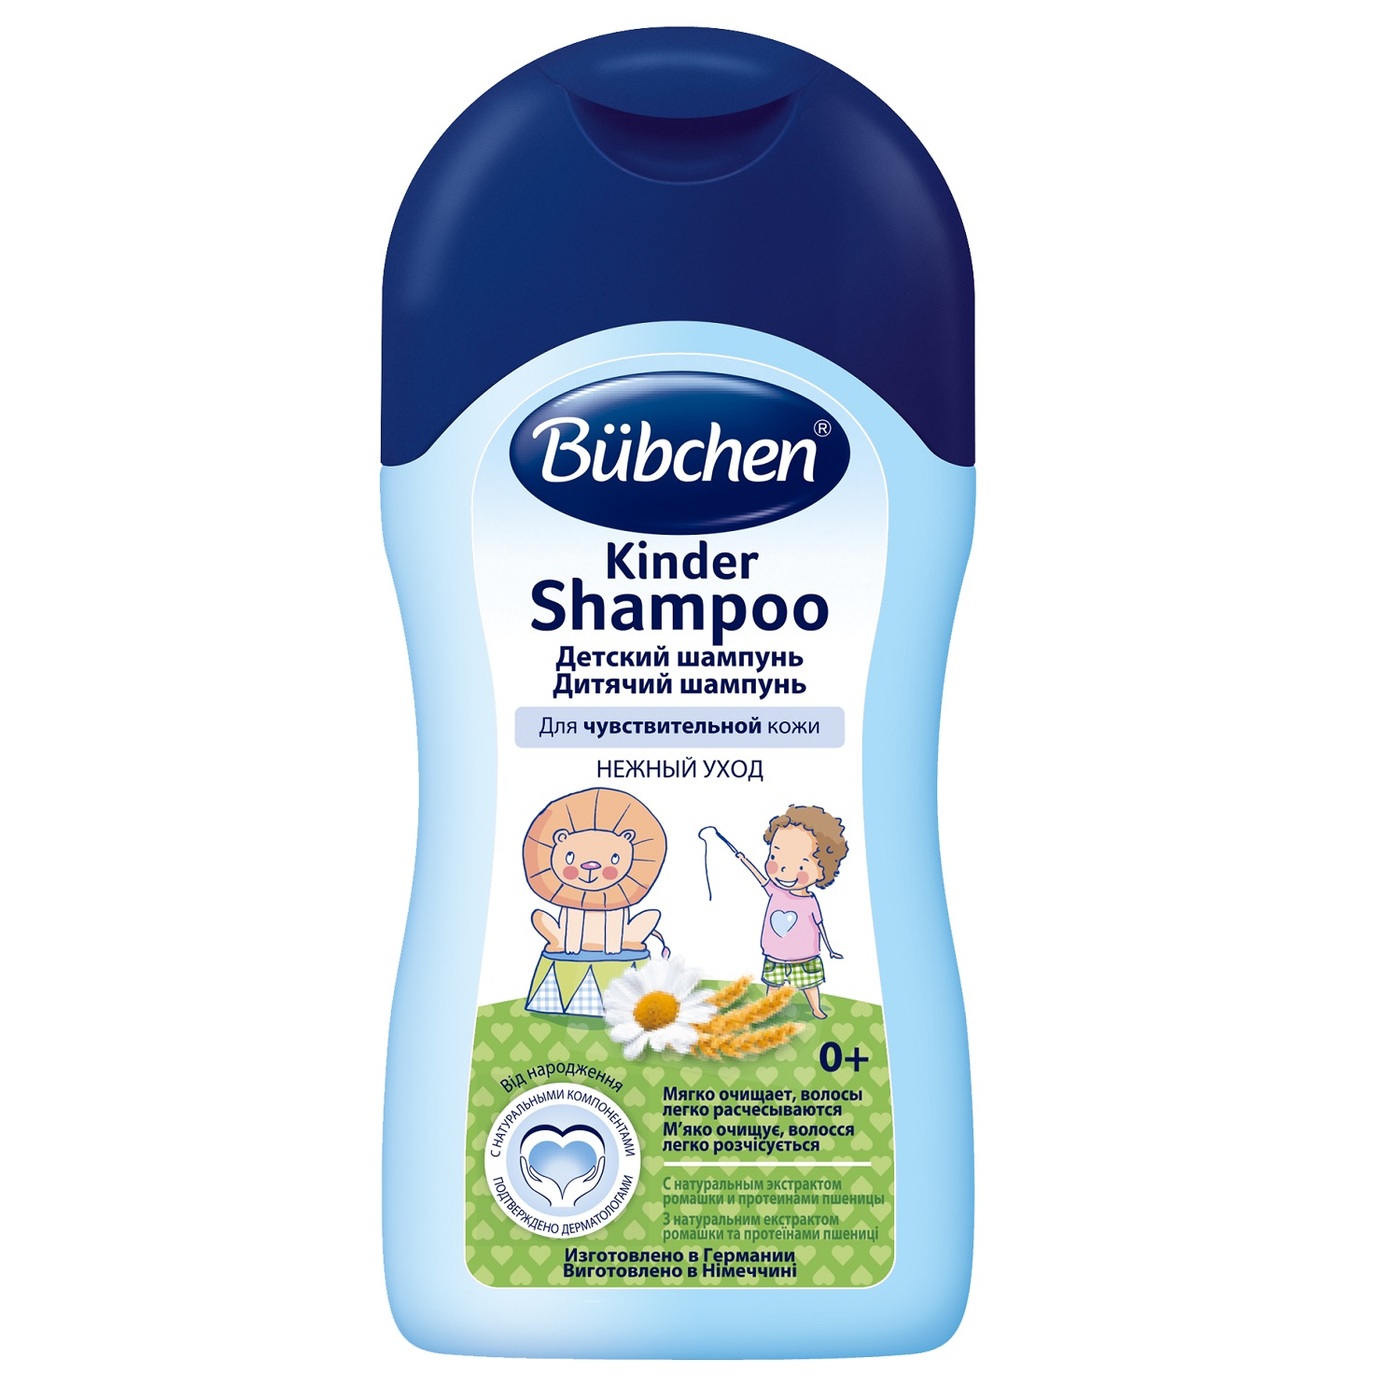 Bubchen Kinder Shampoo